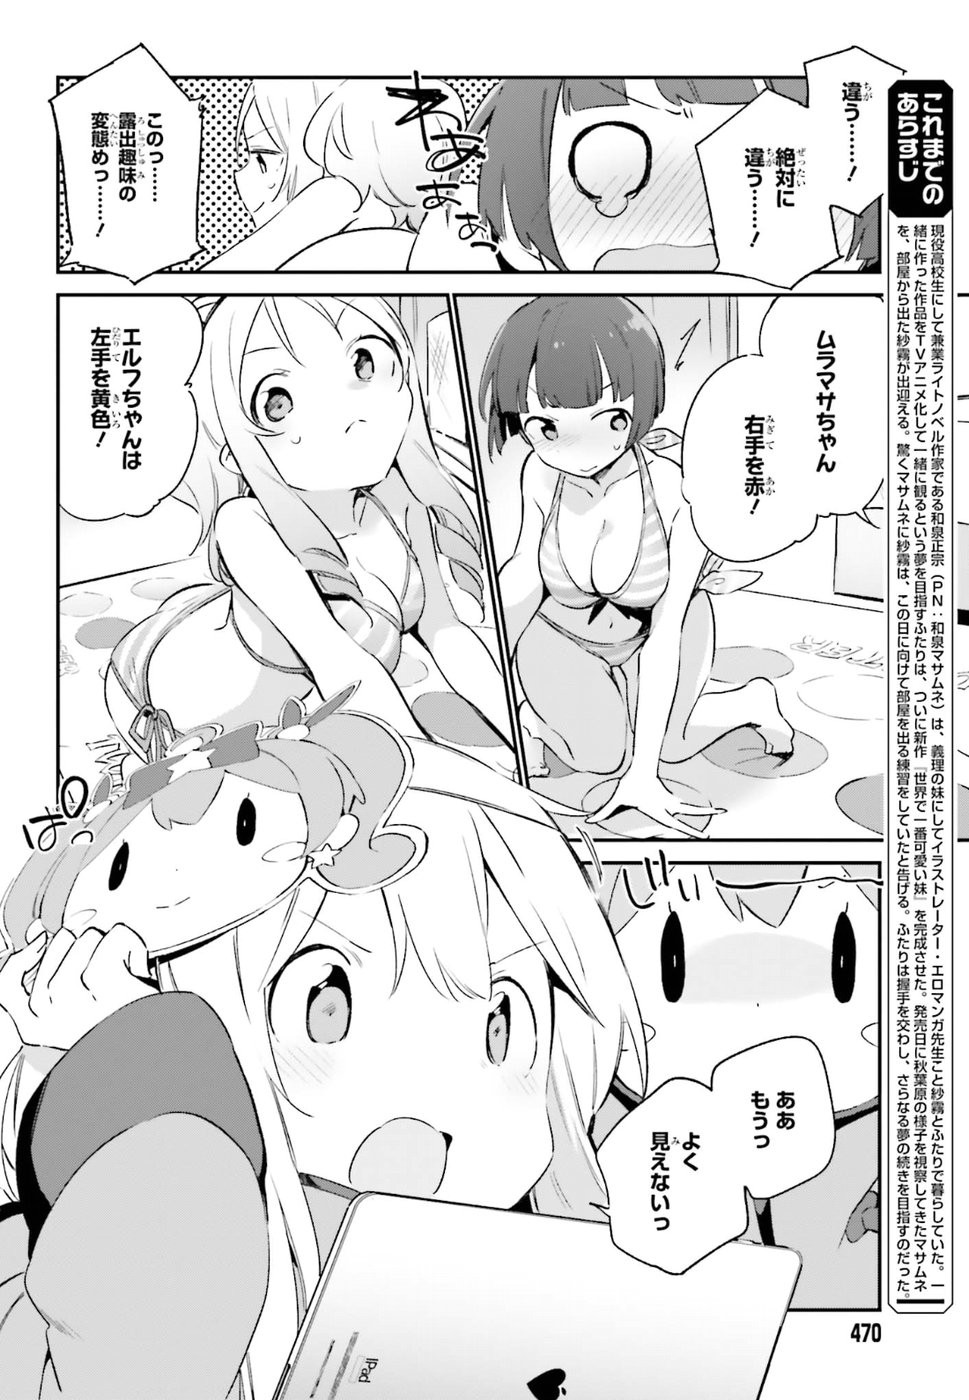 Ero Manga Sensei - Chapter 37 - Page 4